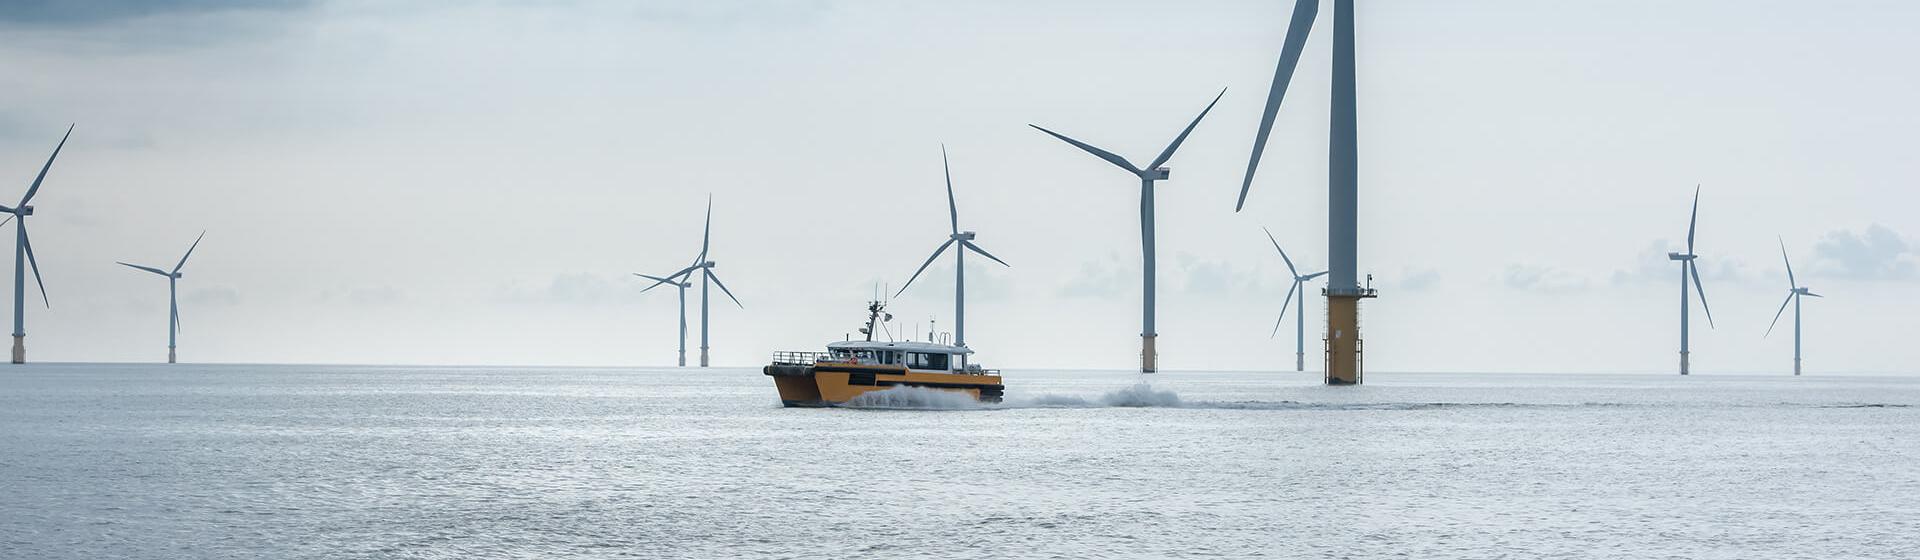 Parc éolien offshore. Un bateau de service navigue rapidement au milieu des turbines, laissant derrière lui un sillage visible.